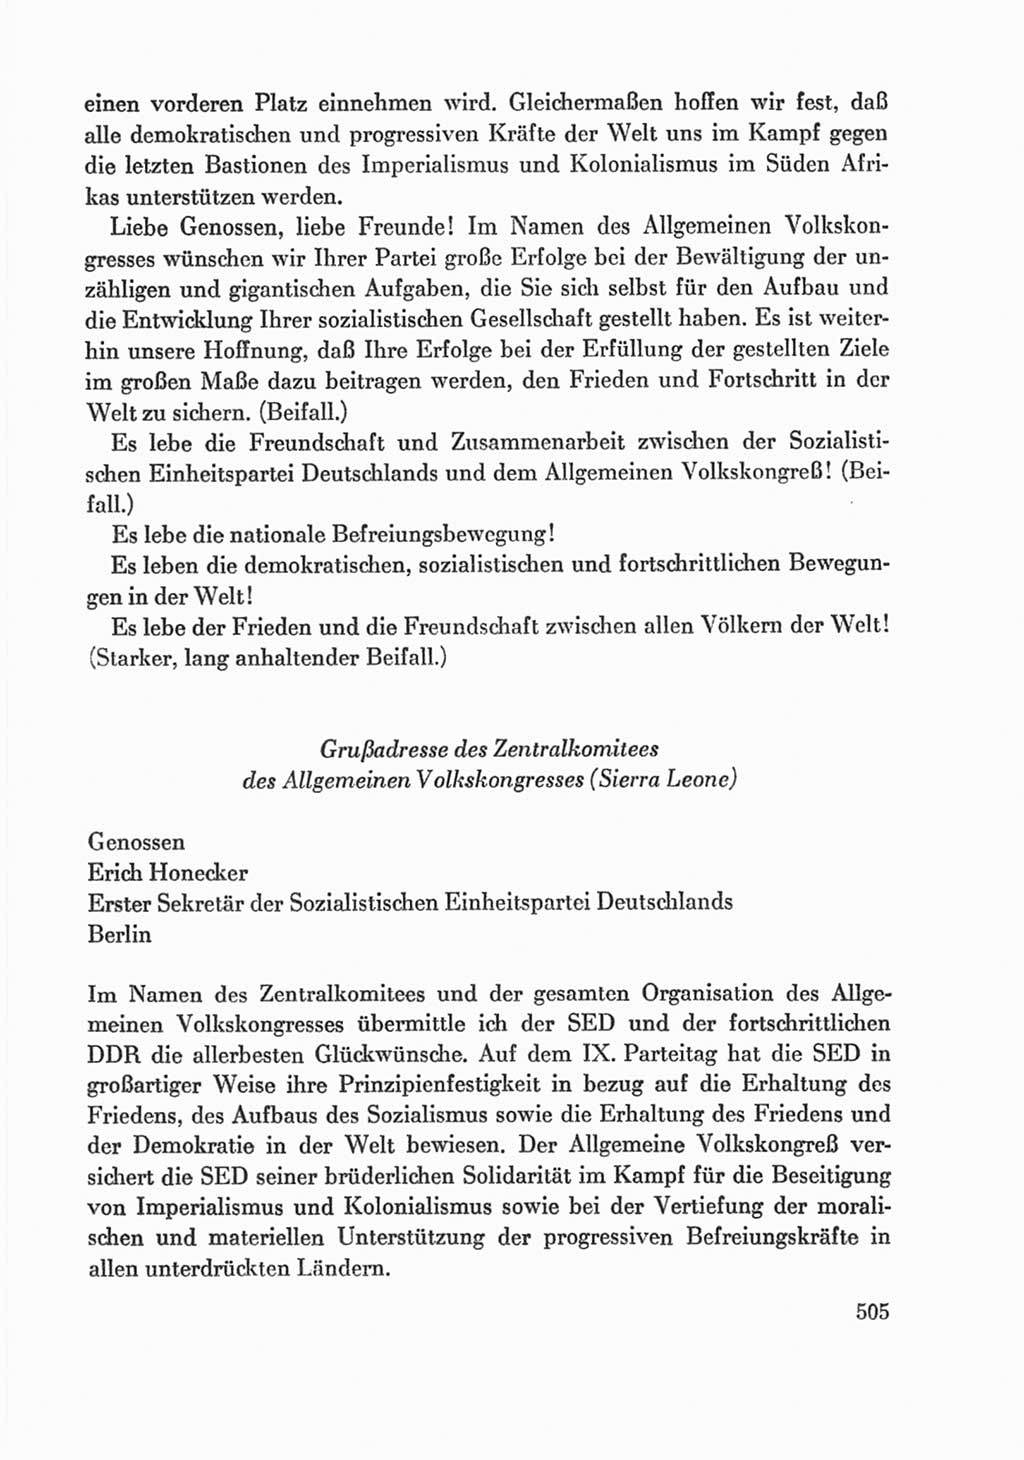 Protokoll der Verhandlungen des Ⅸ. Parteitages der Sozialistischen Einheitspartei Deutschlands (SED) [Deutsche Demokratische Republik (DDR)] 1976, Band 1, Seite 505 (Prot. Verh. Ⅸ. PT SED DDR 1976, Bd. 1, S. 505)